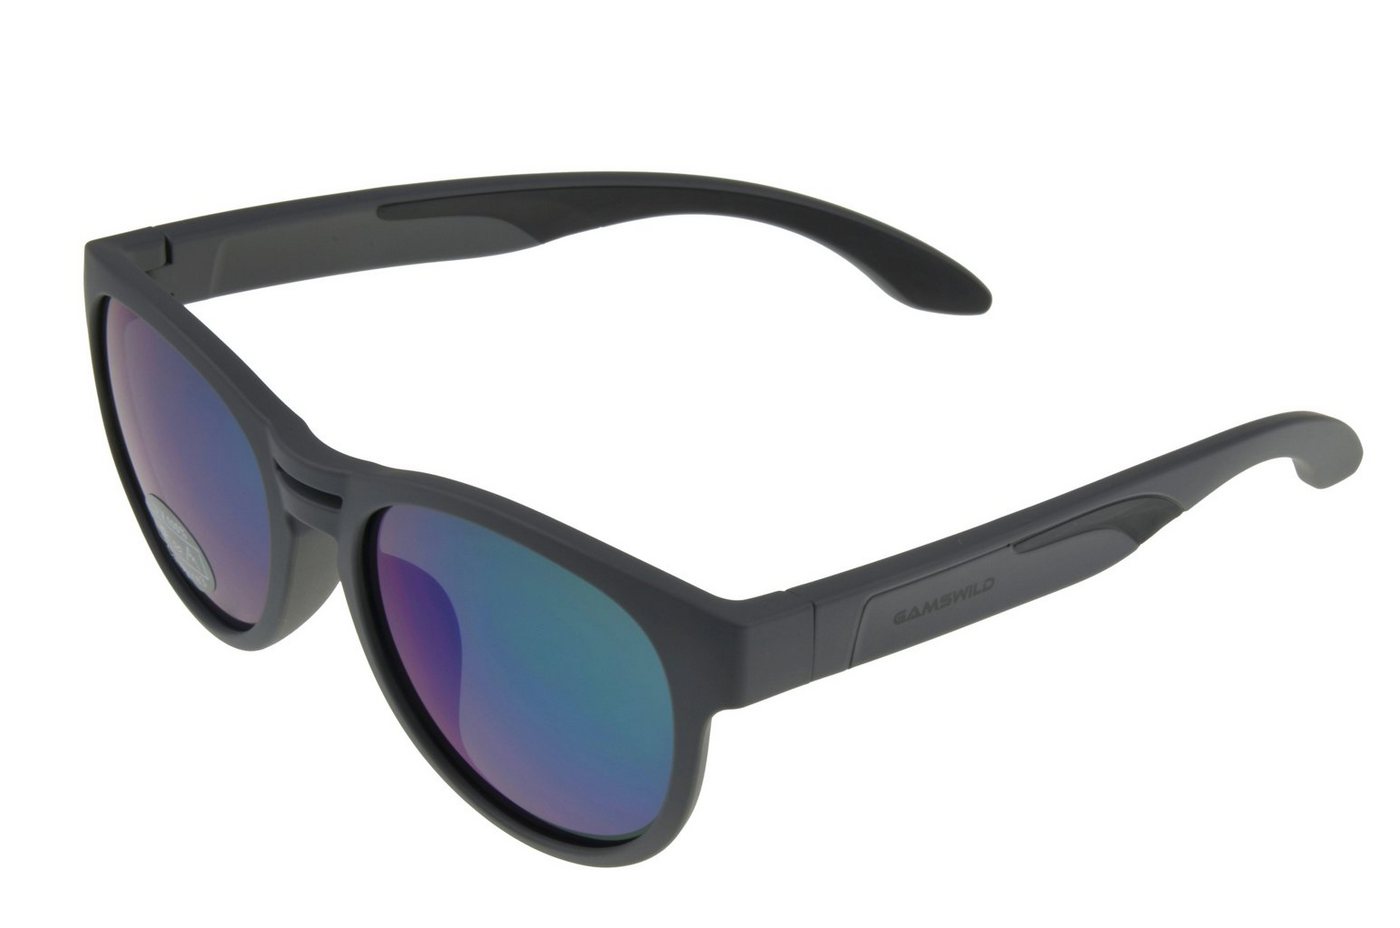 Gamswild Sonnenbrille UV400 GAMSKIDS Jugendbrille 5 -10 J. Kinderbrille verspiegelt kids Unisex Modell WJ5022 in blau, grau-grün, grau-rot von Gamswild